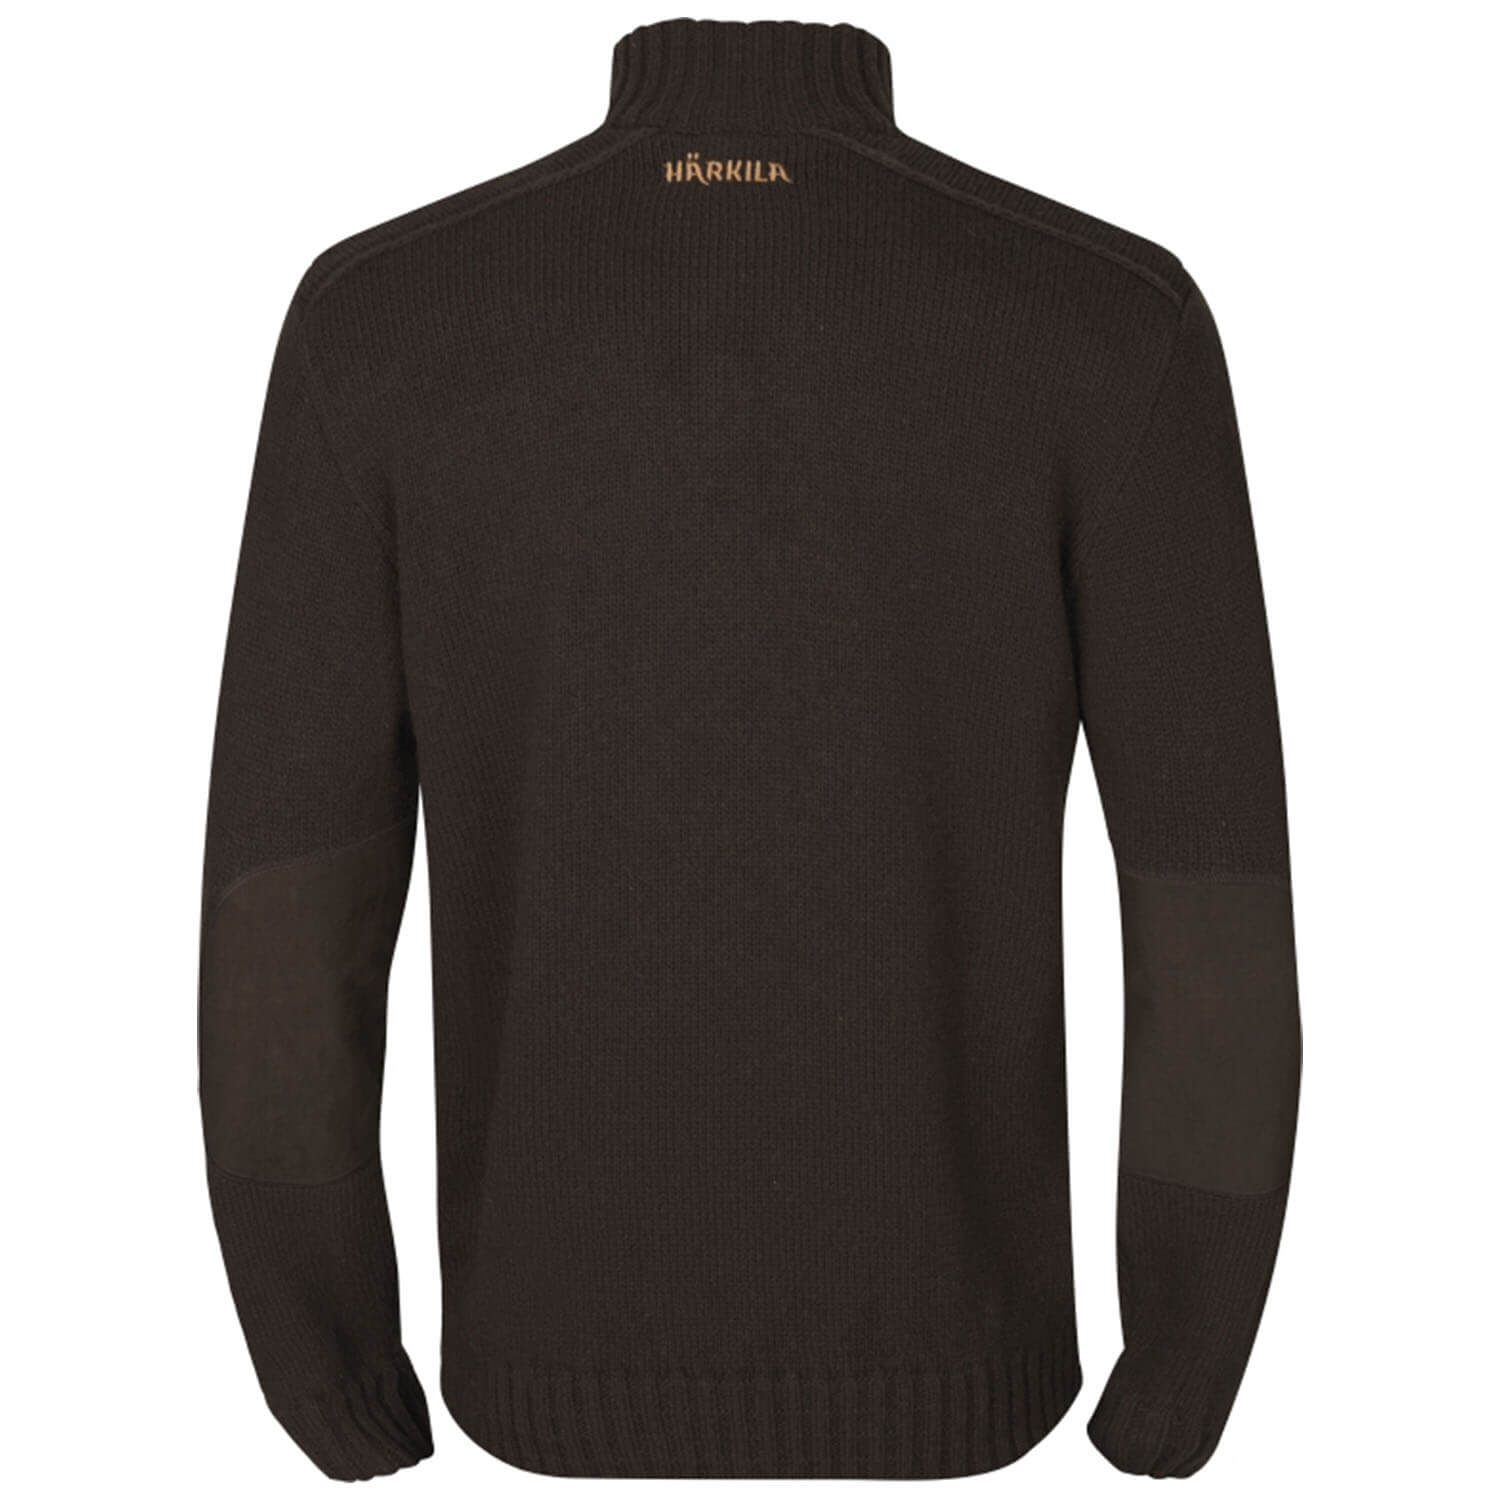 Härkila sweater annaboda 2.0 HSP (demitasse brown)